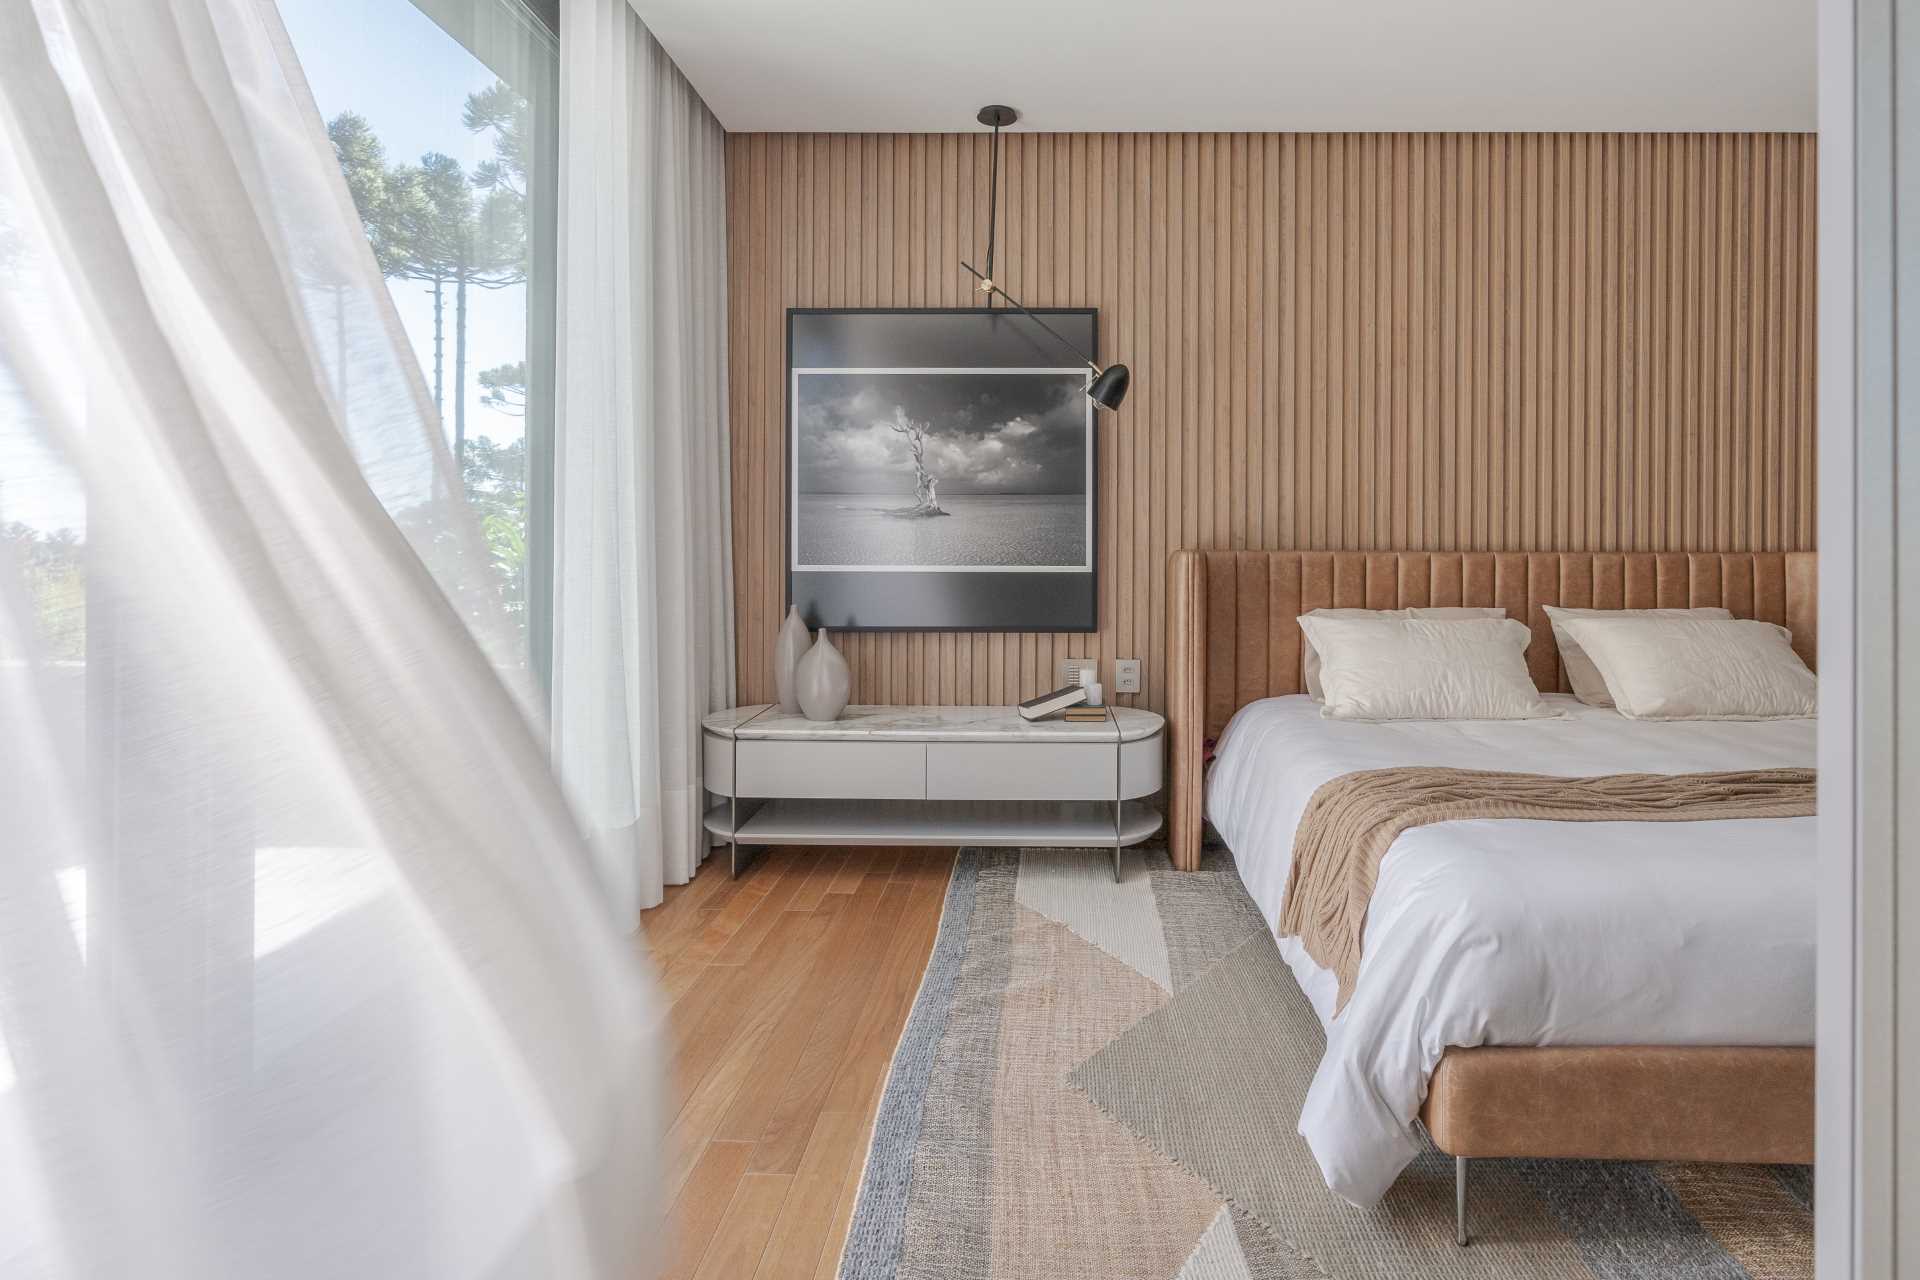 در این اتاق خواب اصلی مدرن، نوارهای چوبی عمودی روی دیوار قرار دارد، در حالی که تخت دارای یک تخته سر منحنی است.